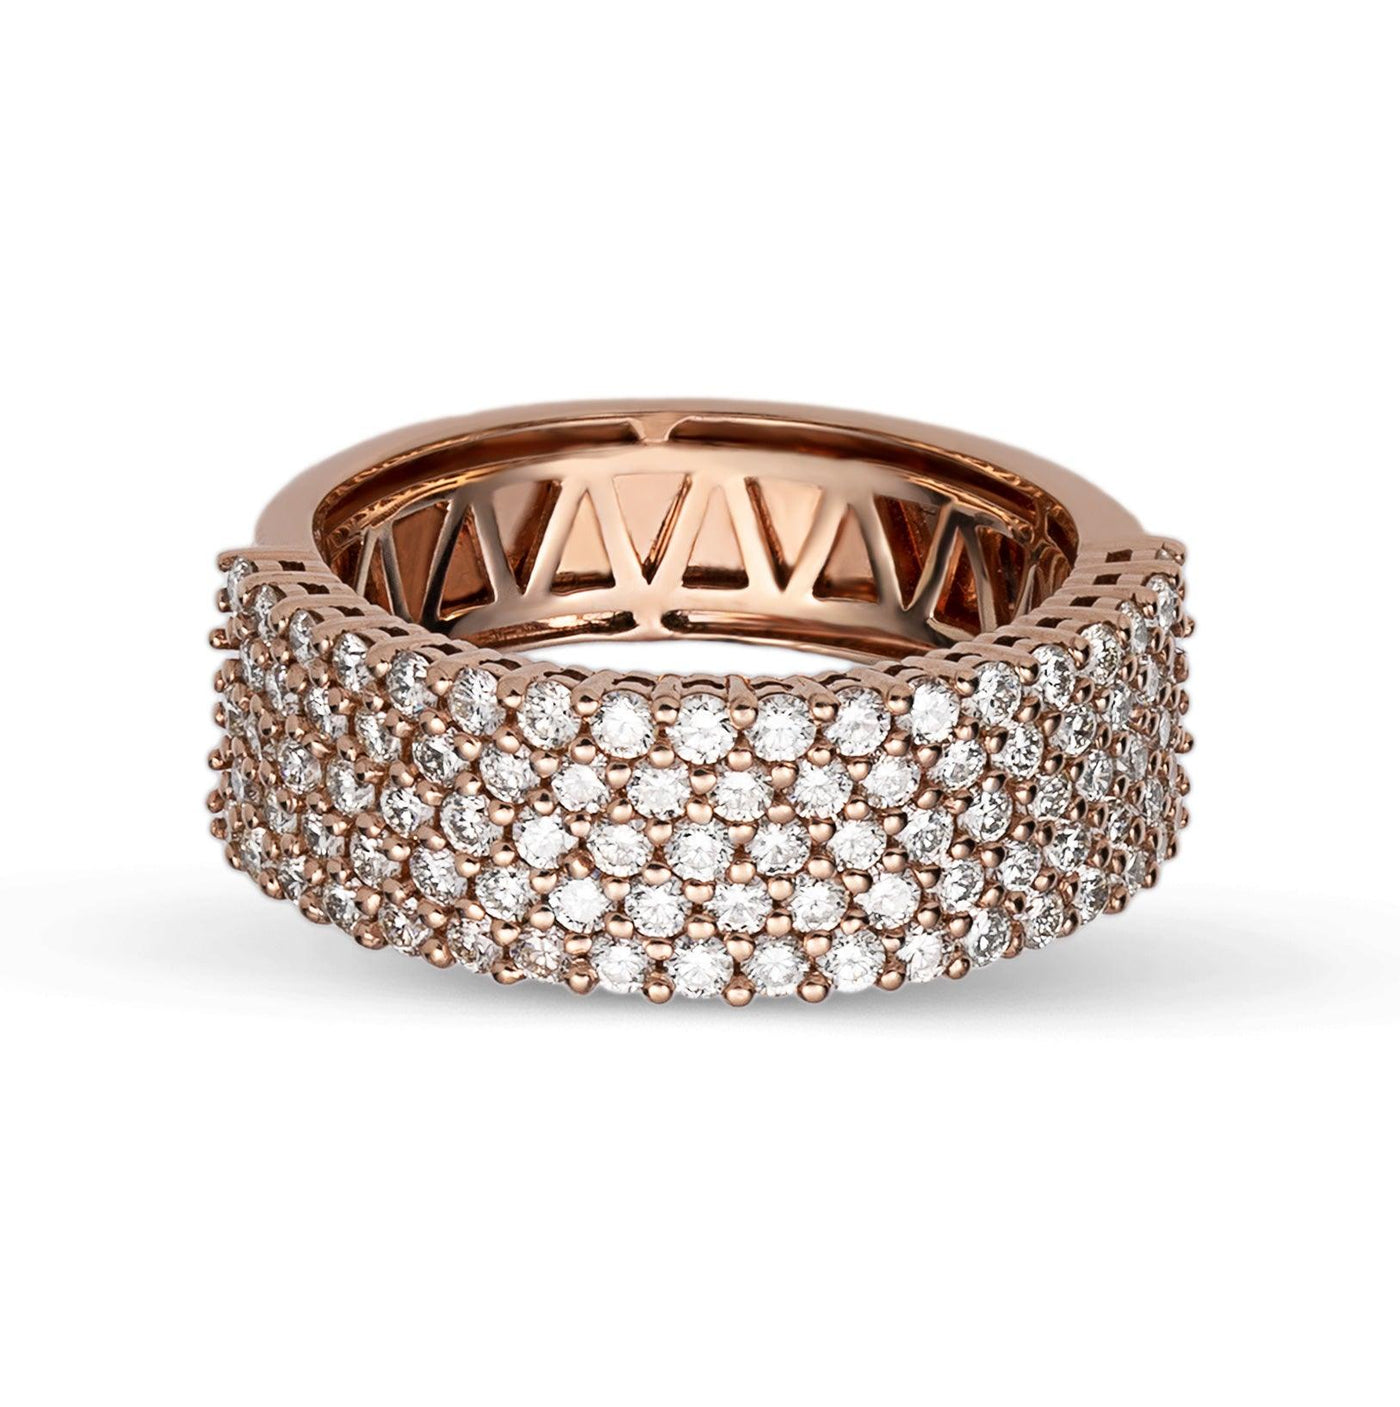 Multi-Row Band Diamond Ring 2.99ct 14K Rose Gold - bayamjewelry